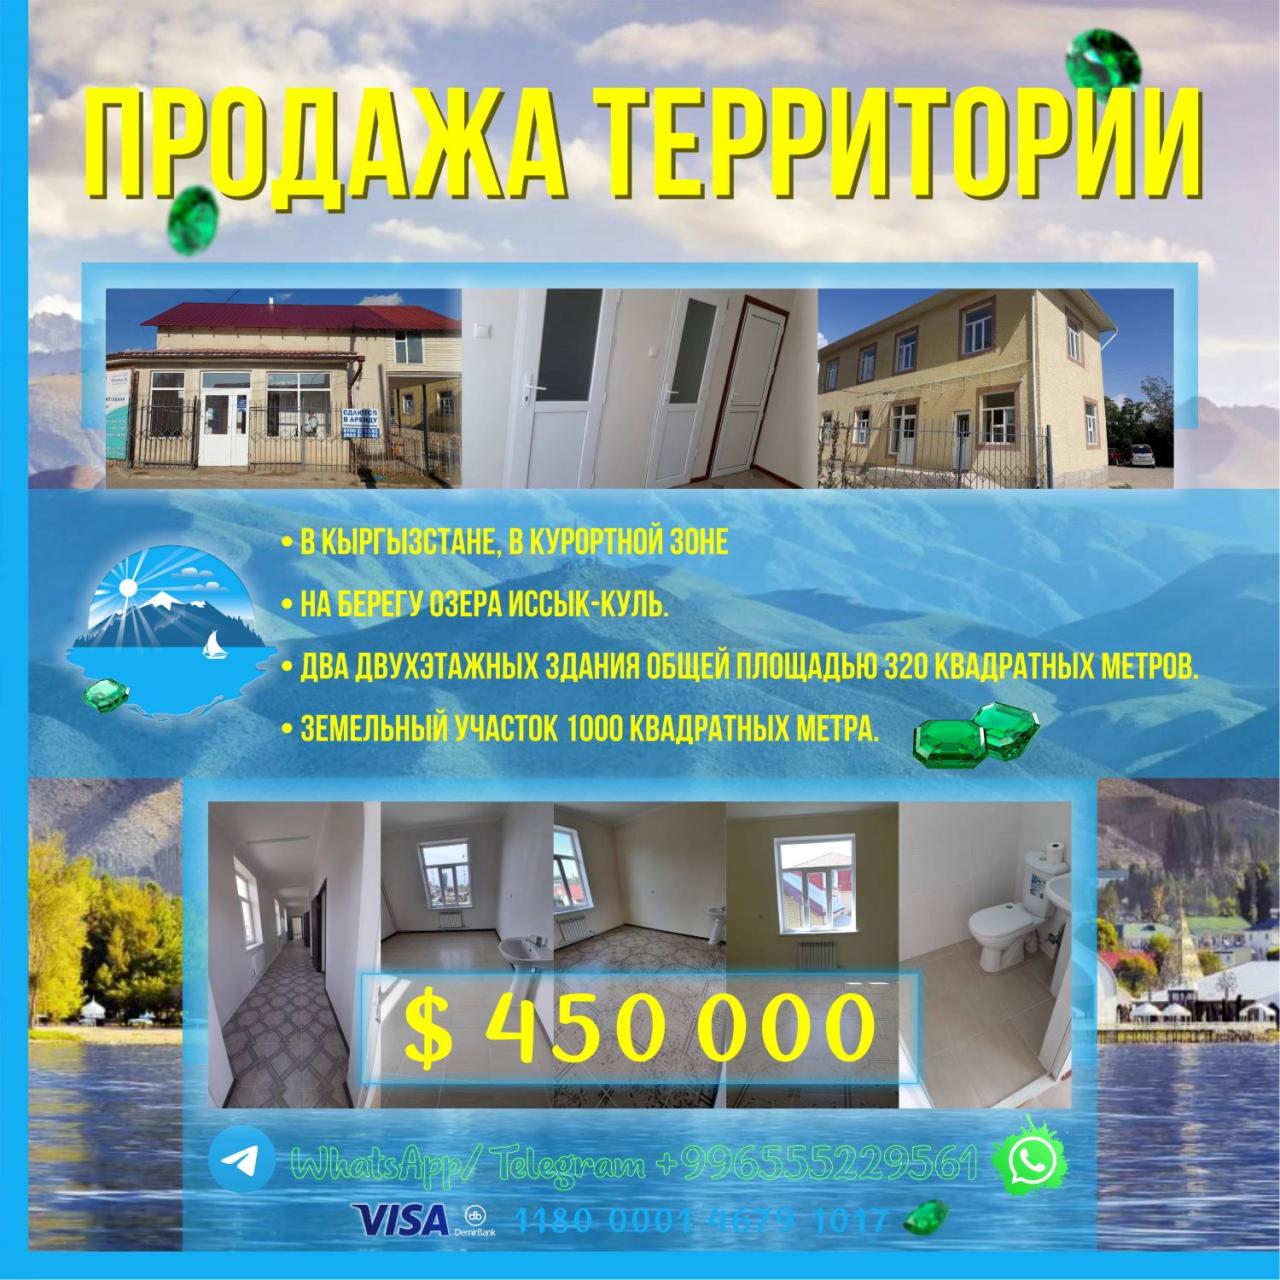 Продаётся территория в центре г. Чолпон-Ата, на берегу озера Ыссык-Кул .... Татарстан